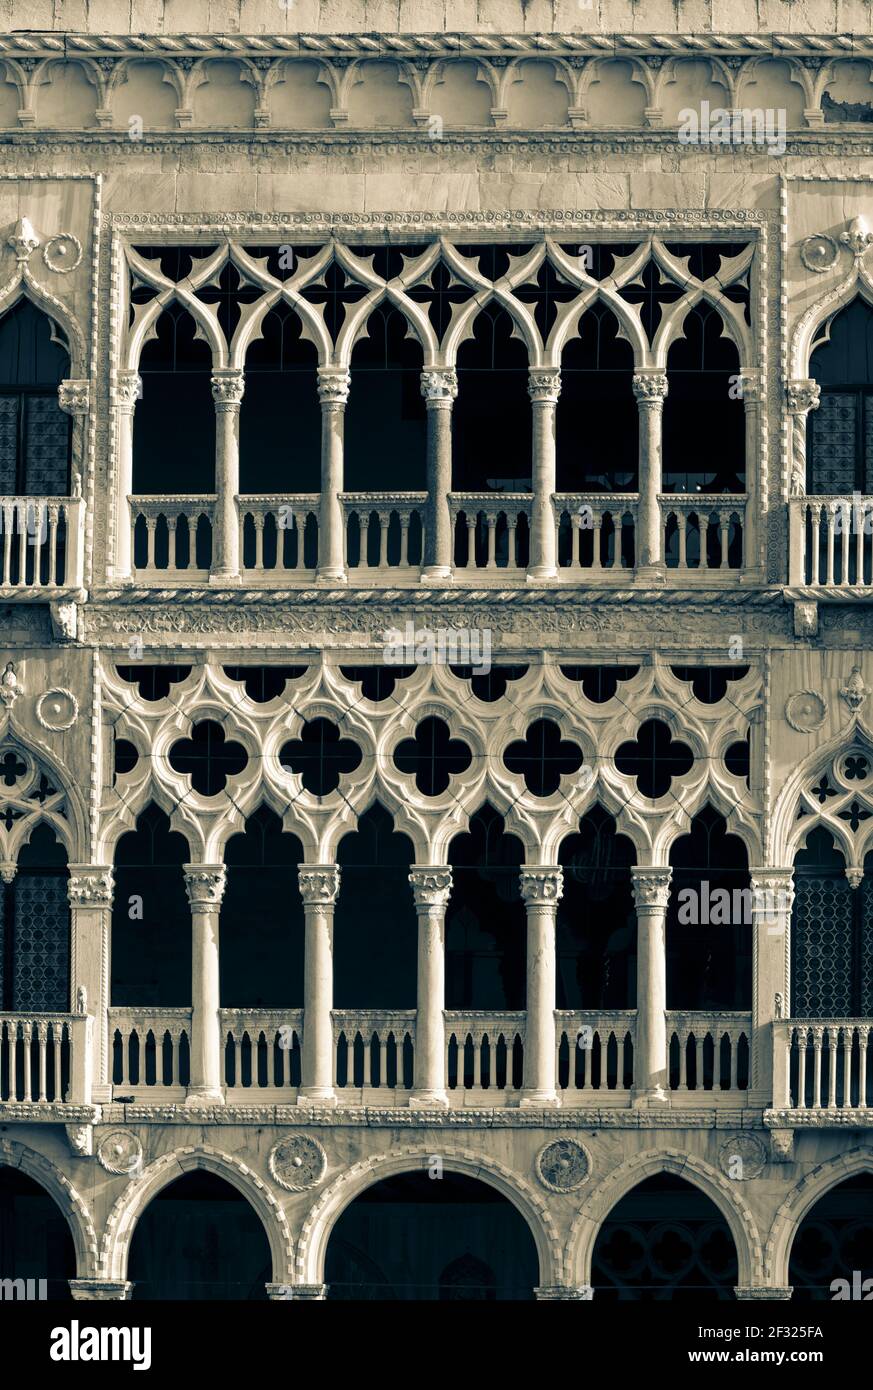 Italien, Venedig, Ca'd'Oro die berühmtesten venezianischen gotischen Paläste auf der Canal Grande Stockfoto